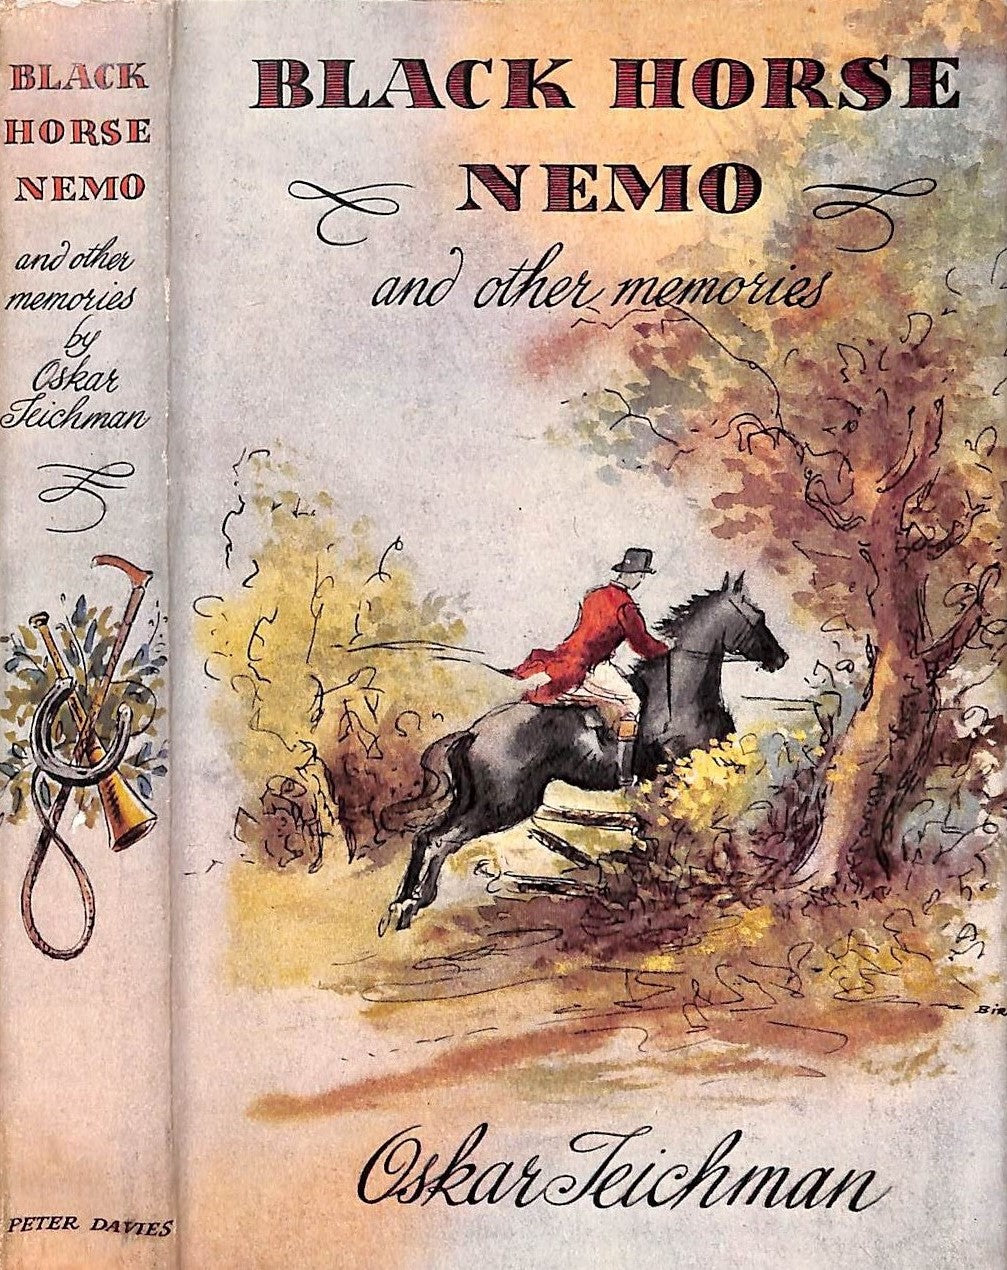 "Black Horse Nemo And Other Memories" 1957 TEICHMAN, Oskar